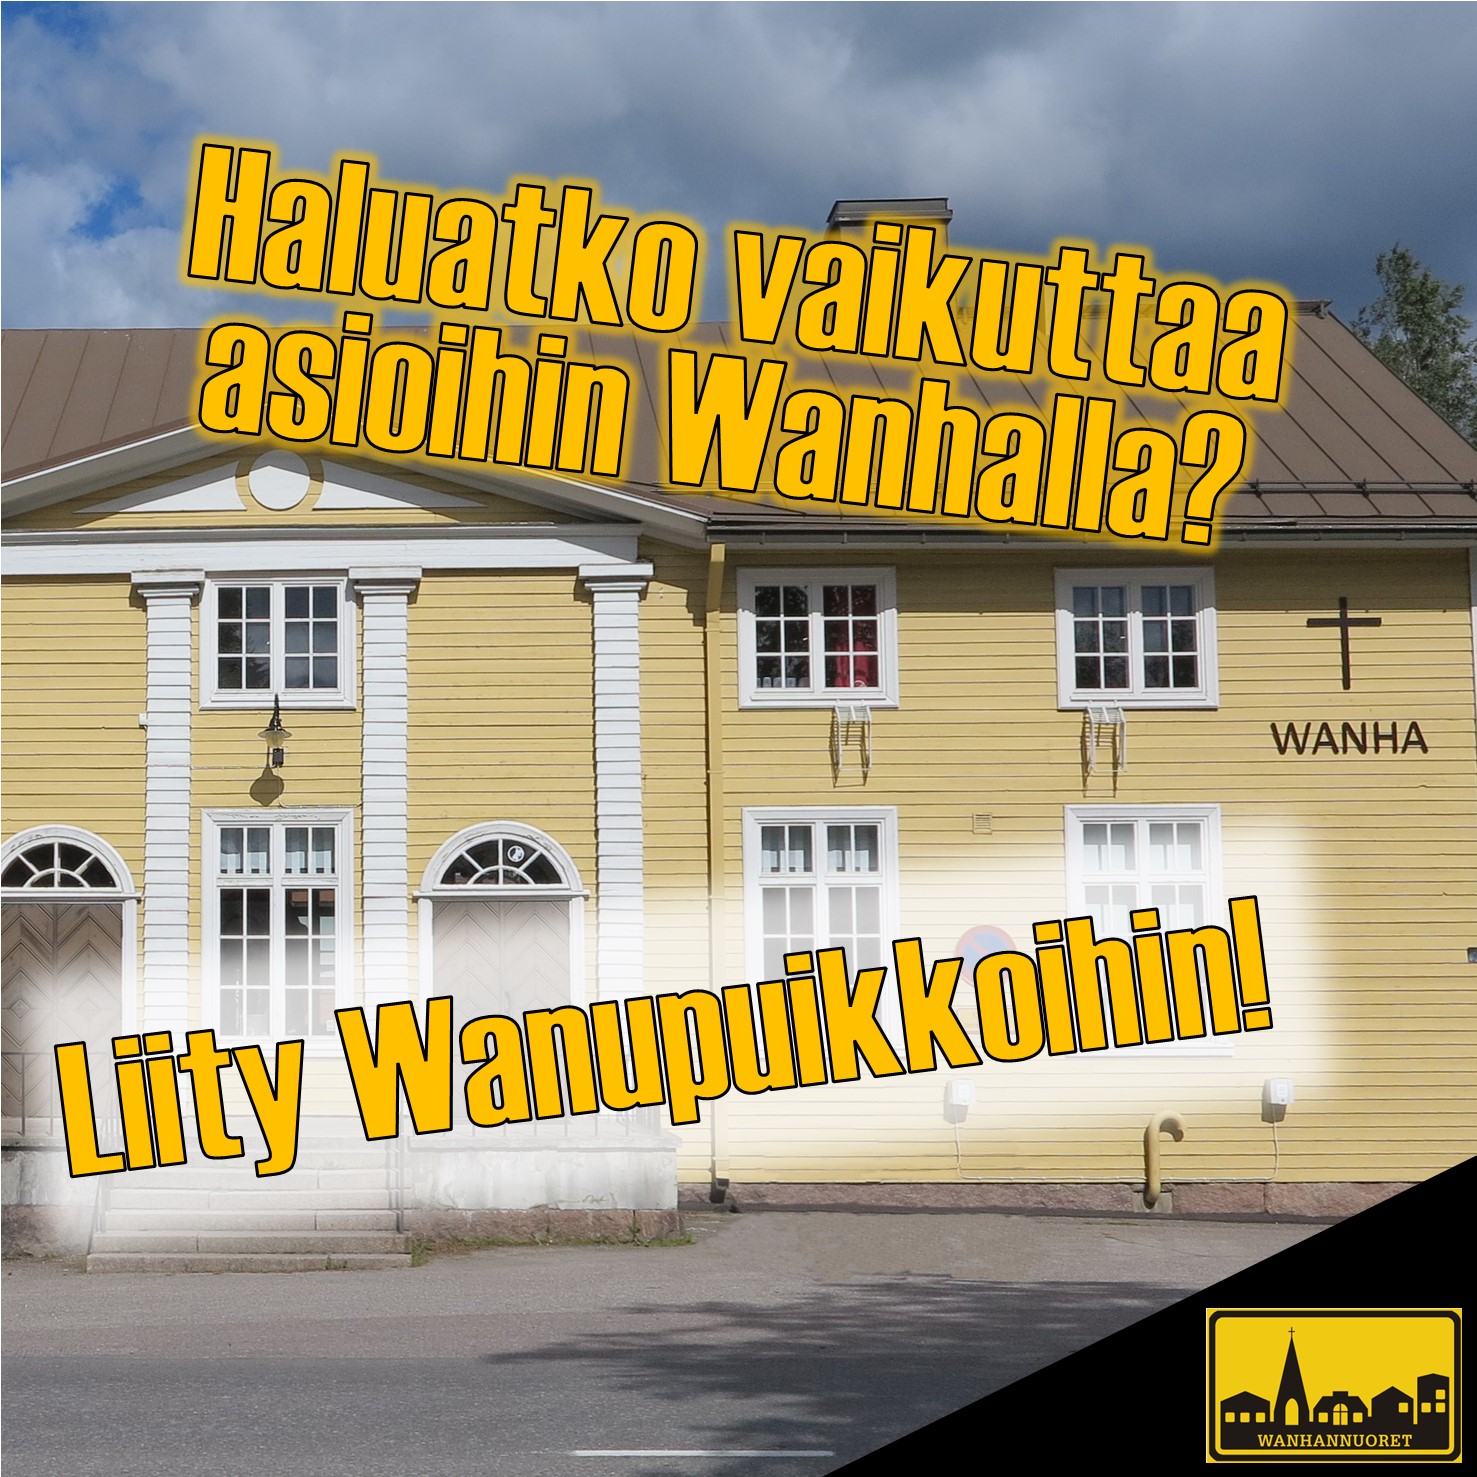 Taustalla keltainen puutalo, teksti Haluatko vaikuttaa asioihin Wanhalla? Liity Wanupuikkoihin!